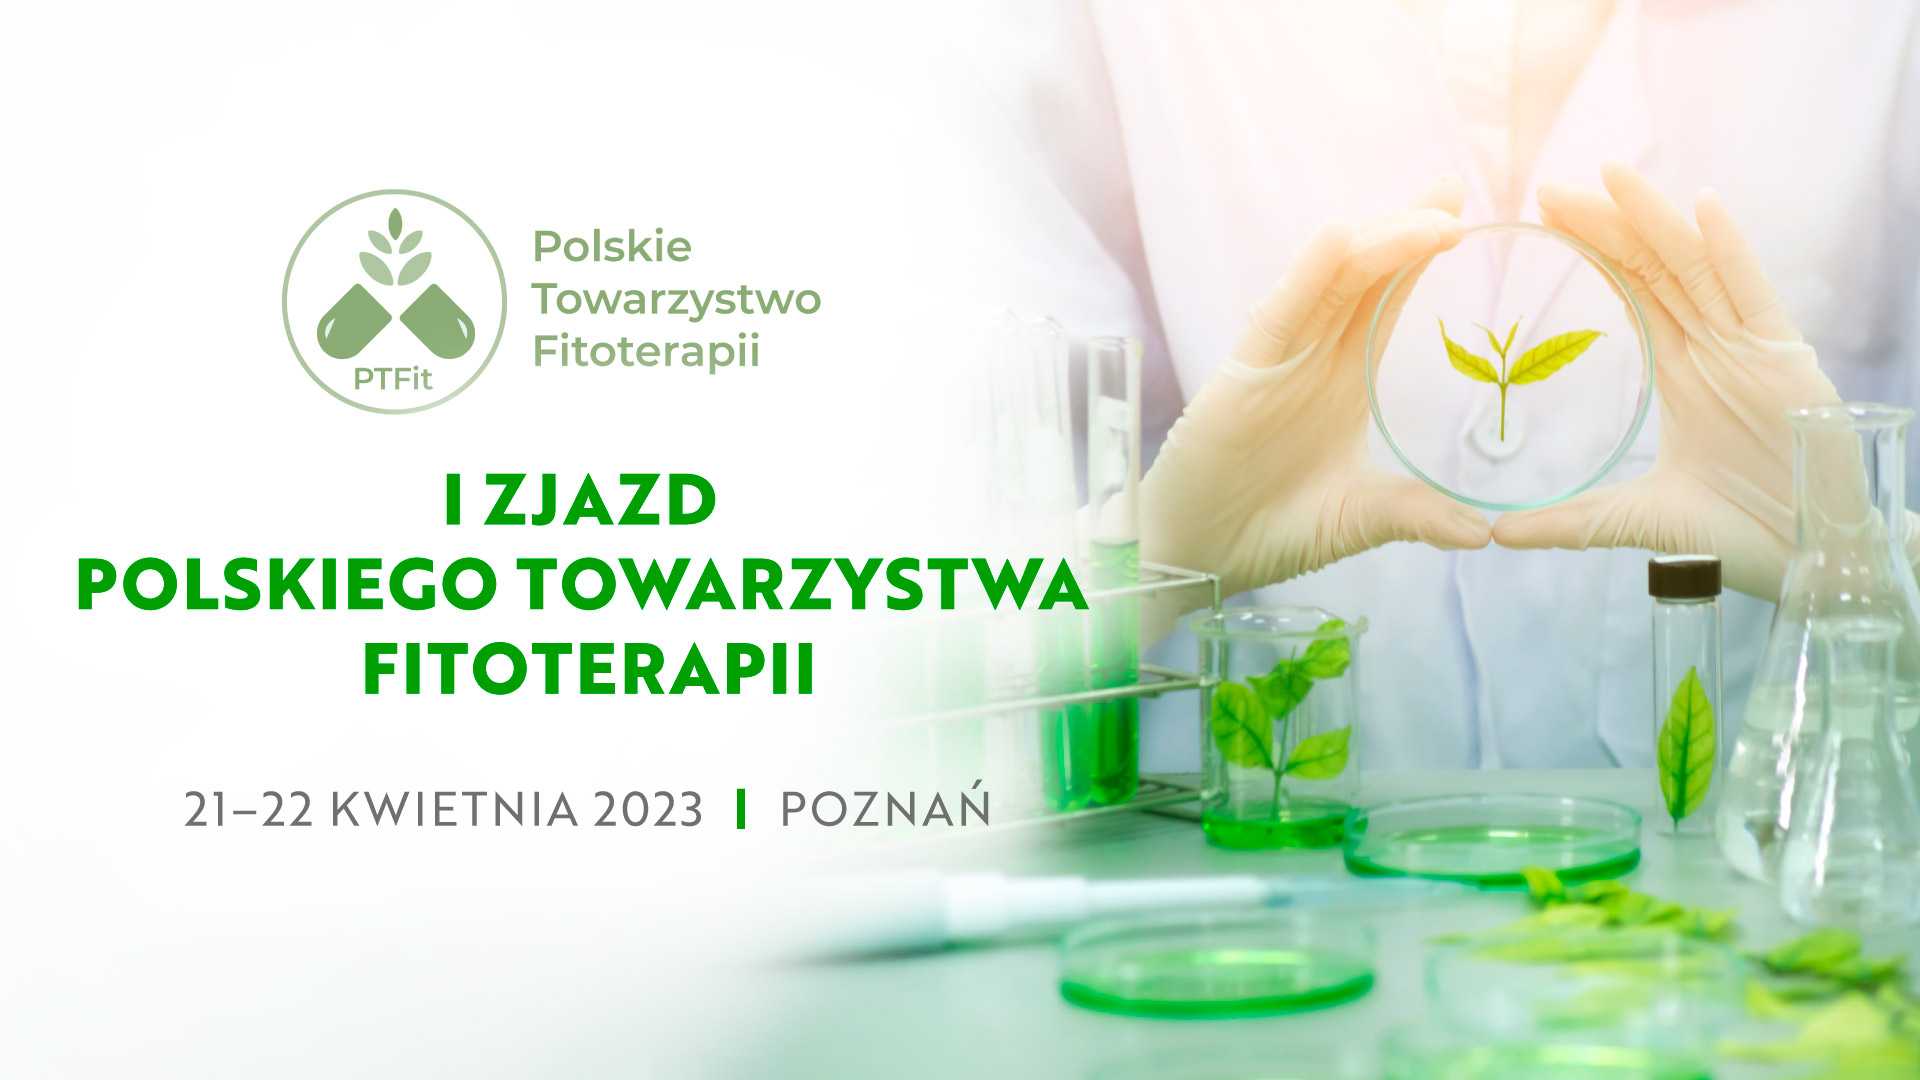 I zjazd PTFiT - I Zjazd Polskiego Towarzystwa Fitoterapii -zmiana terminu. 20-21.10.2023